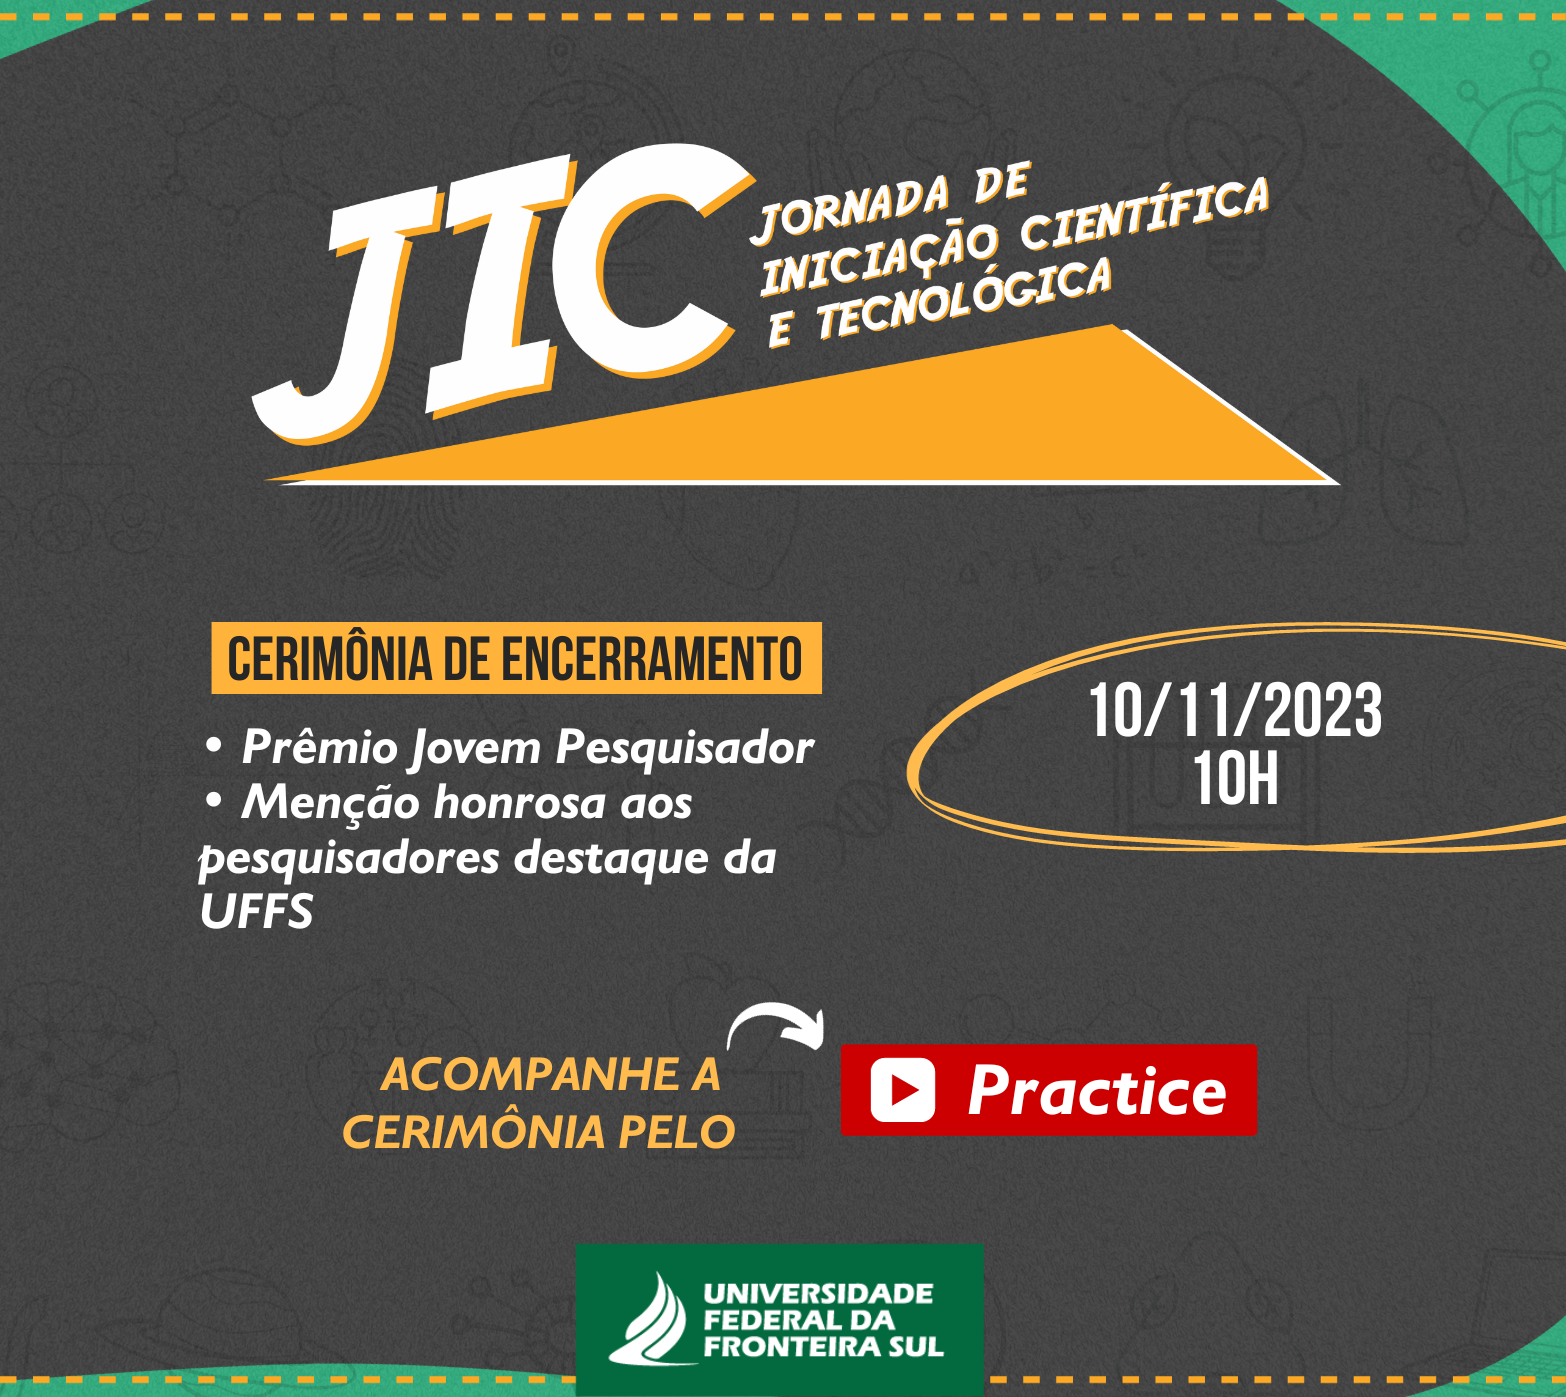 Encerramento da XIII Jornada de Iniciação Científica (JIC) e III Simpósio de Pós-Graduação (Simpós-Sul)